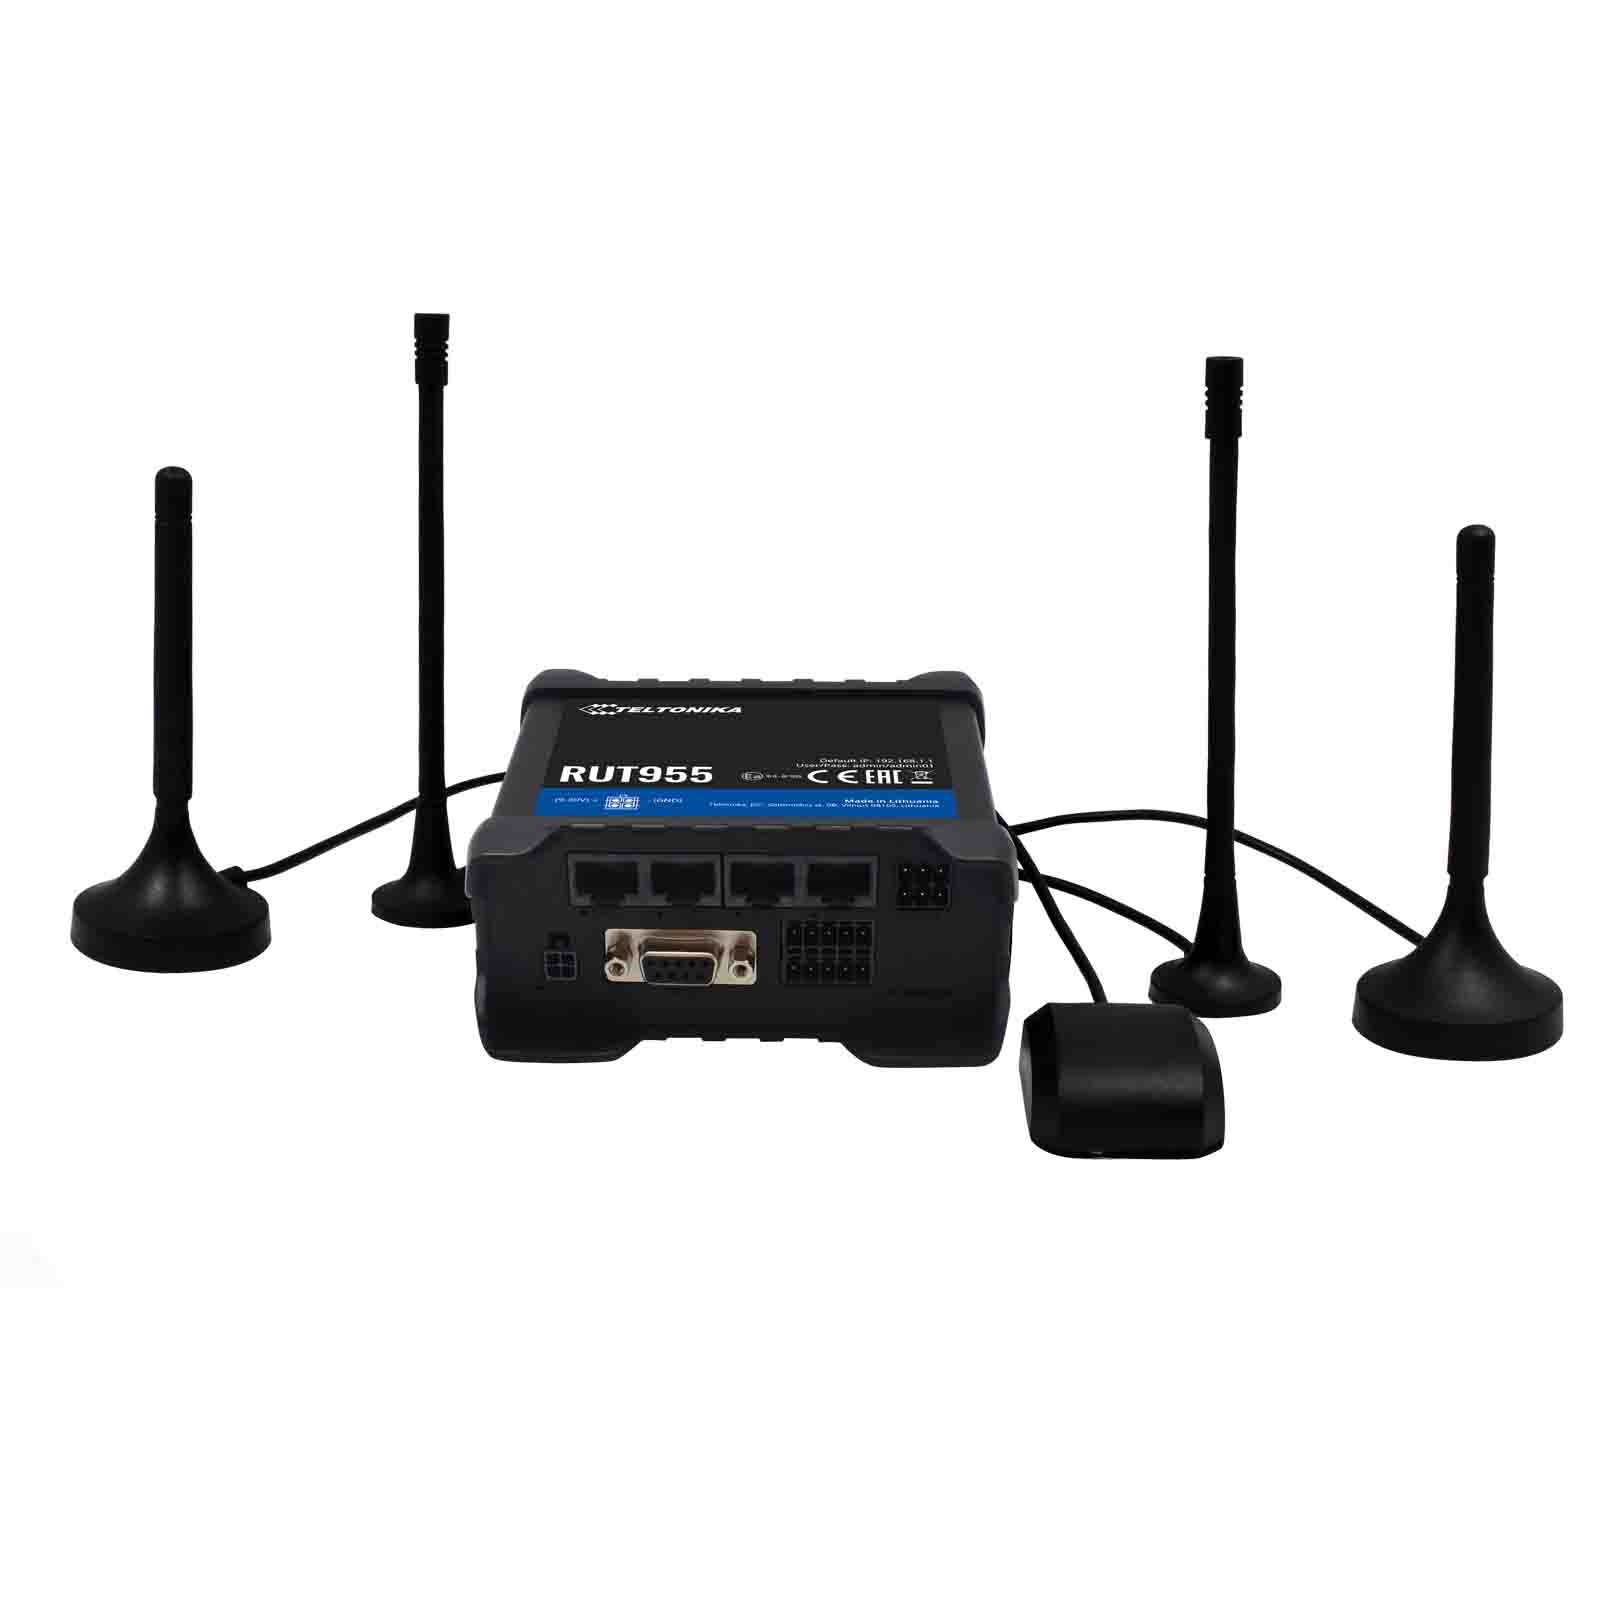 Teltonika RUT955 router LTE Dual SIM (RUT955T033C0)